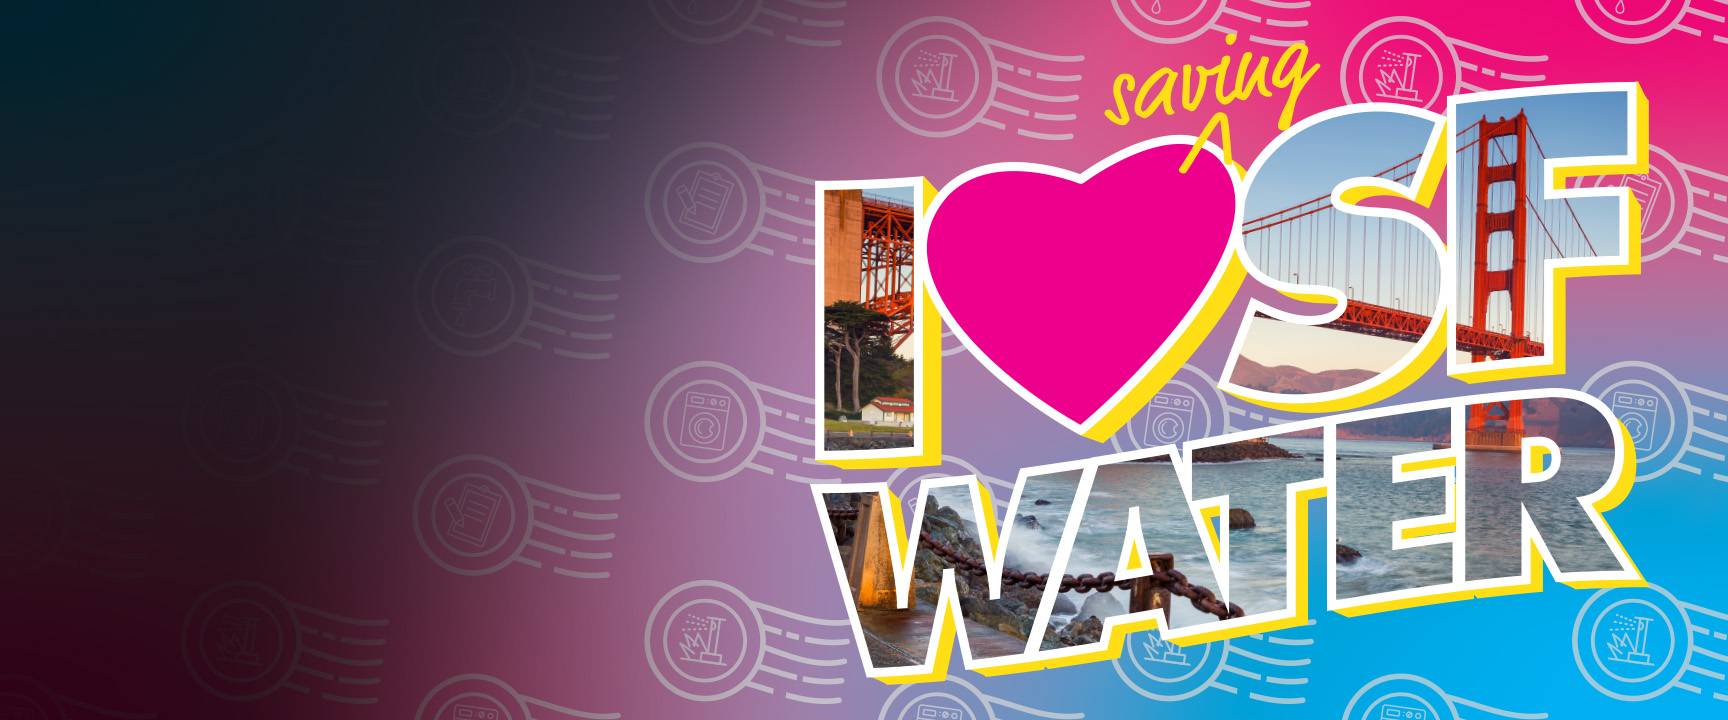 Đồ họa bưu thiếp: Tôi yêu SF Water